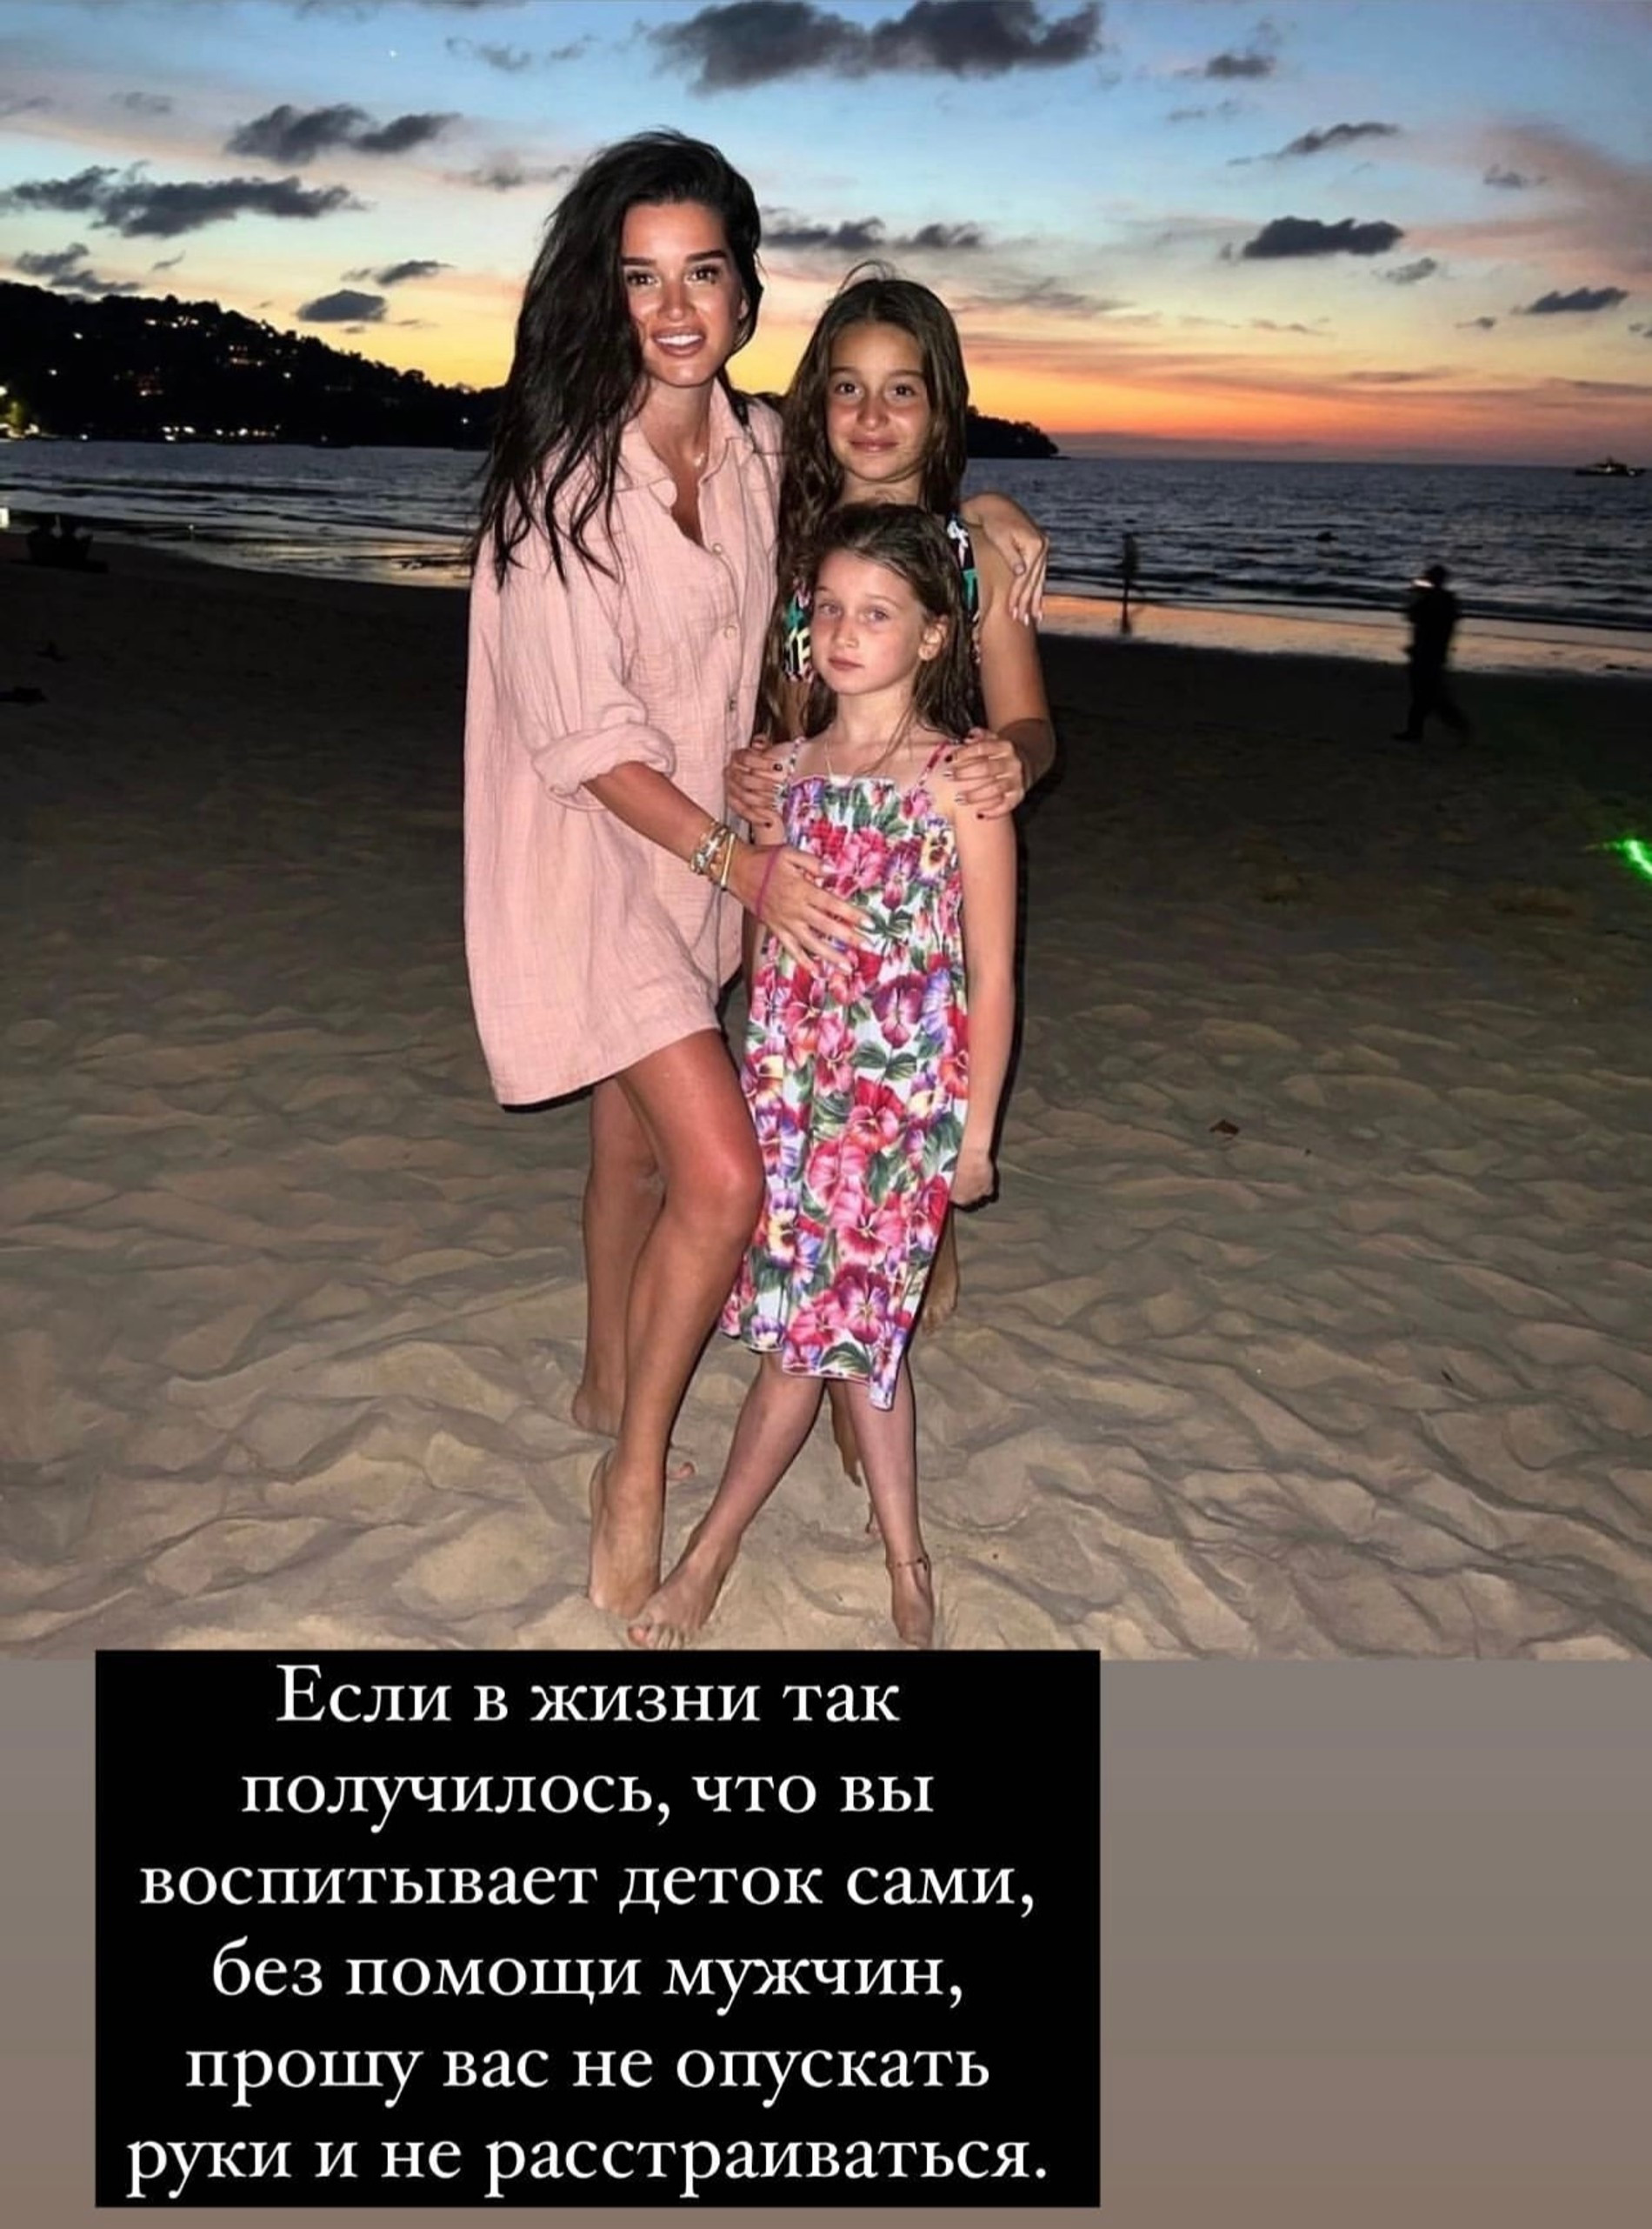 Ксения Бородина с дочками
Фото: Инстаграм (запрещен в РФ) @borodylia